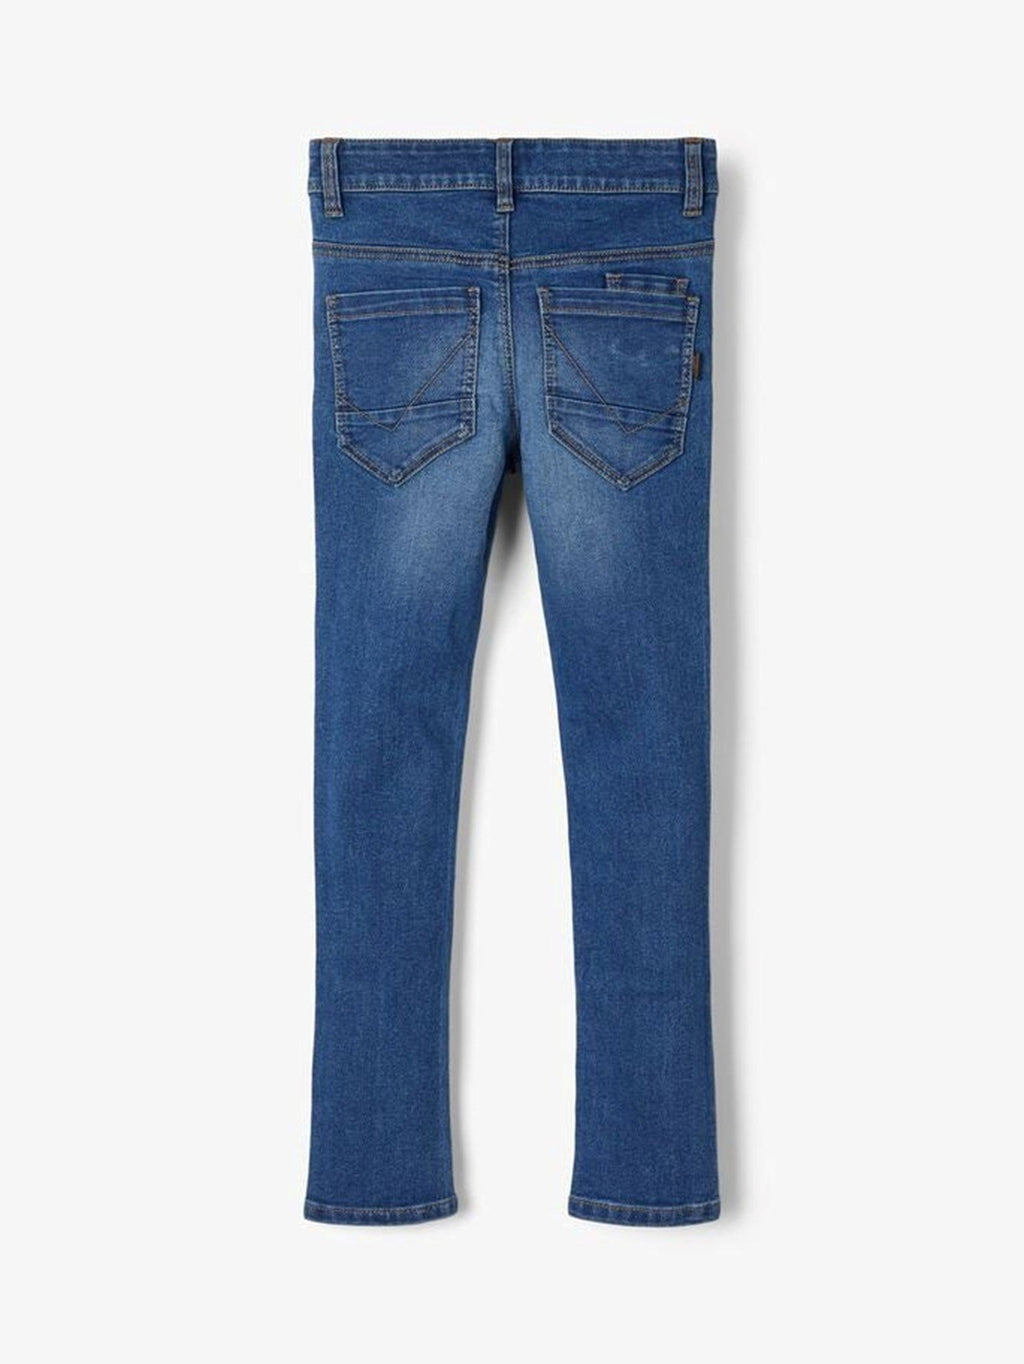 X -Slim Fit Jeans - mittelblauer Denim